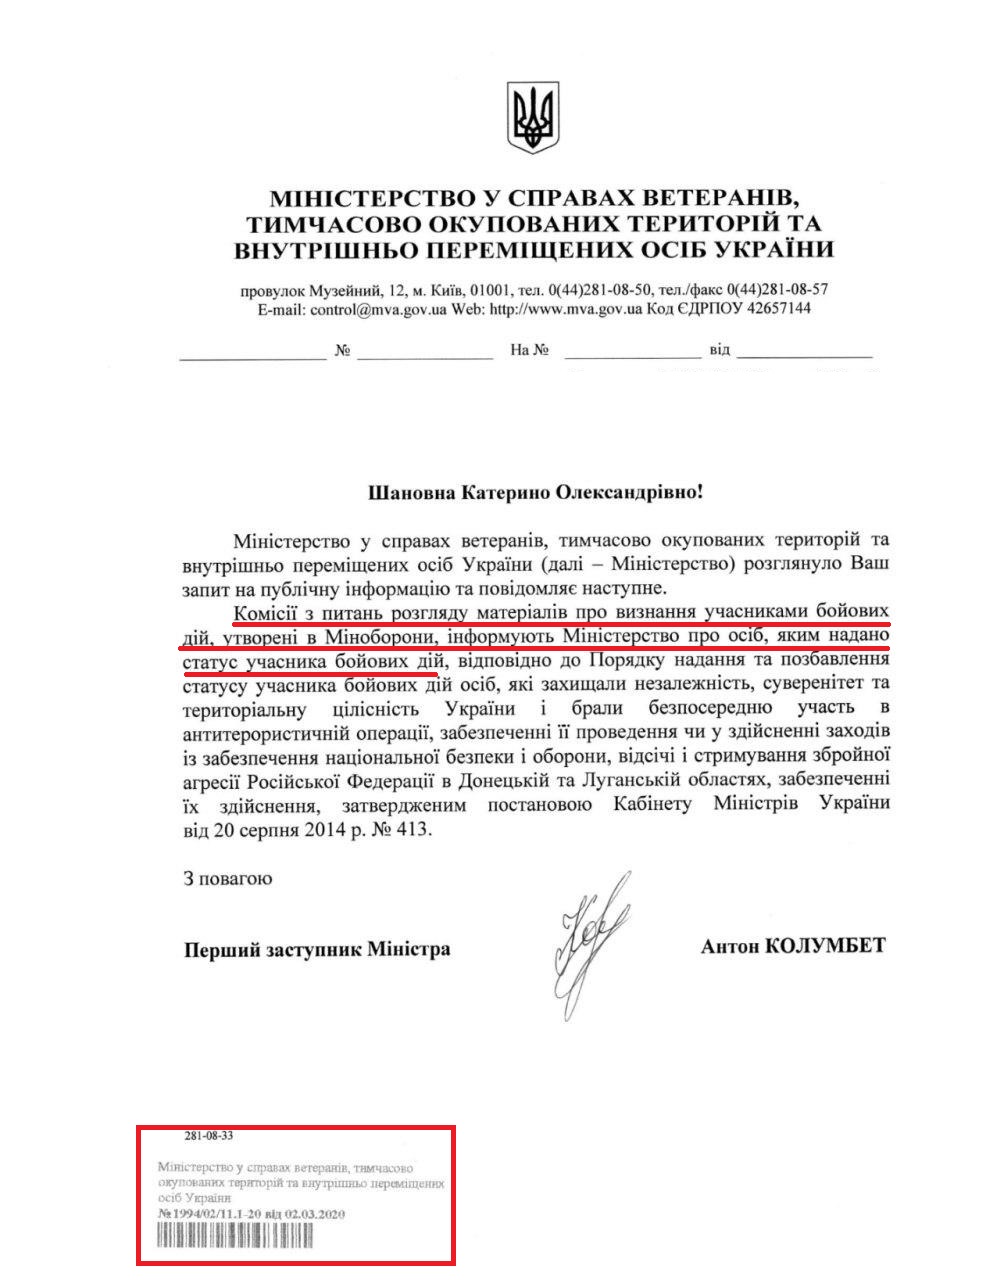 Лист від Міністерства у справах ветеранів, тимчасово окупованих територій та внутрішньо переміщених осіб України  від 2 березня 2020 року